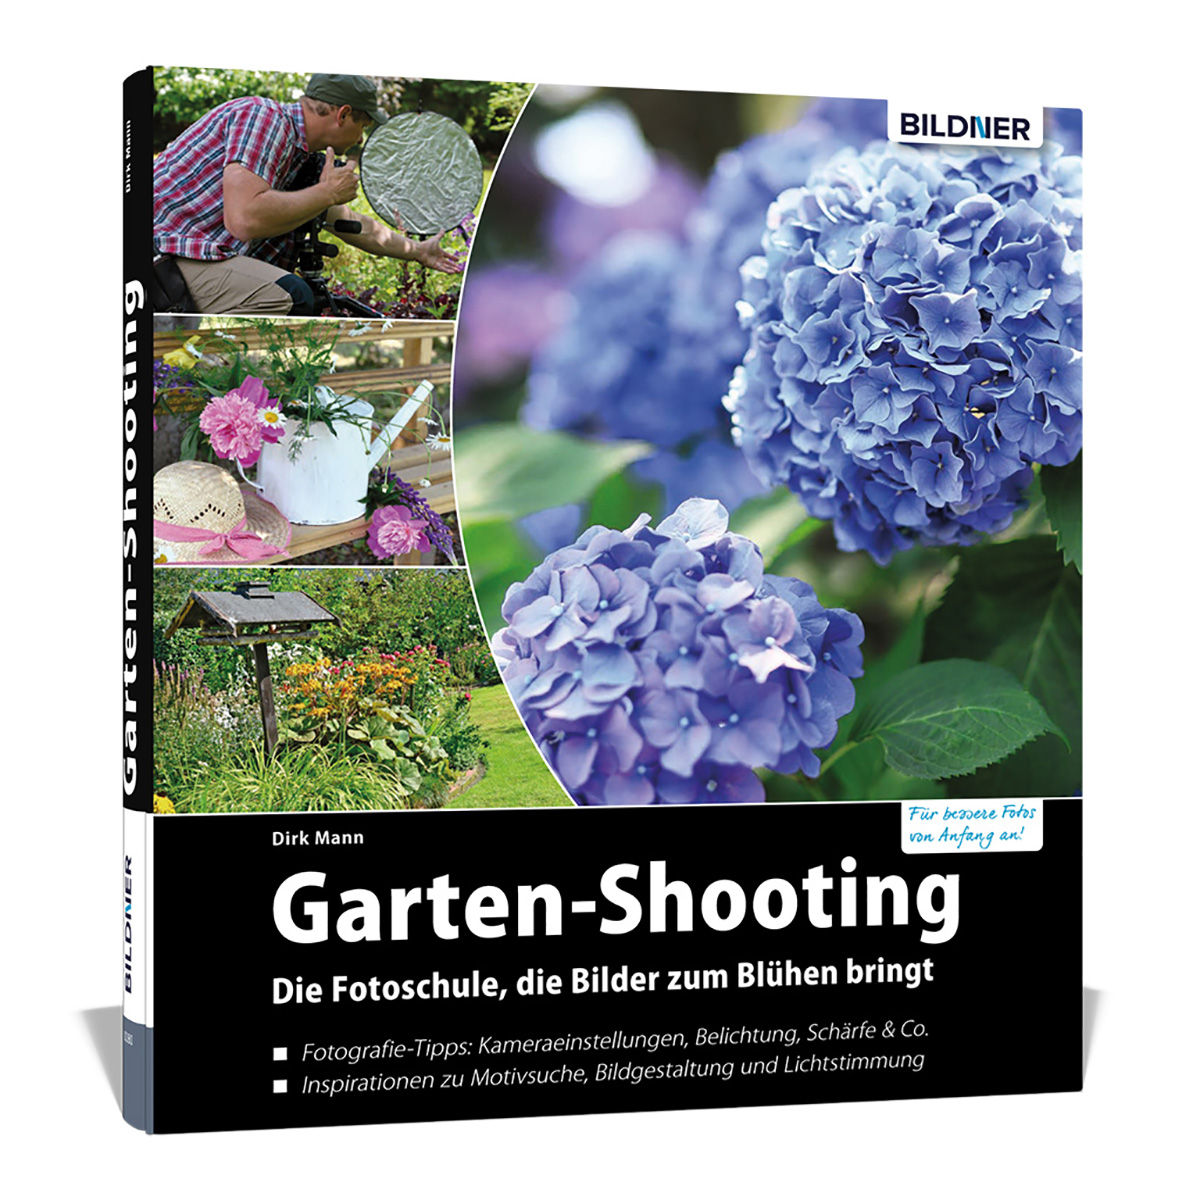 zum die Blühen Garten-Shooting - Fotoschule, Die Bilder bringt